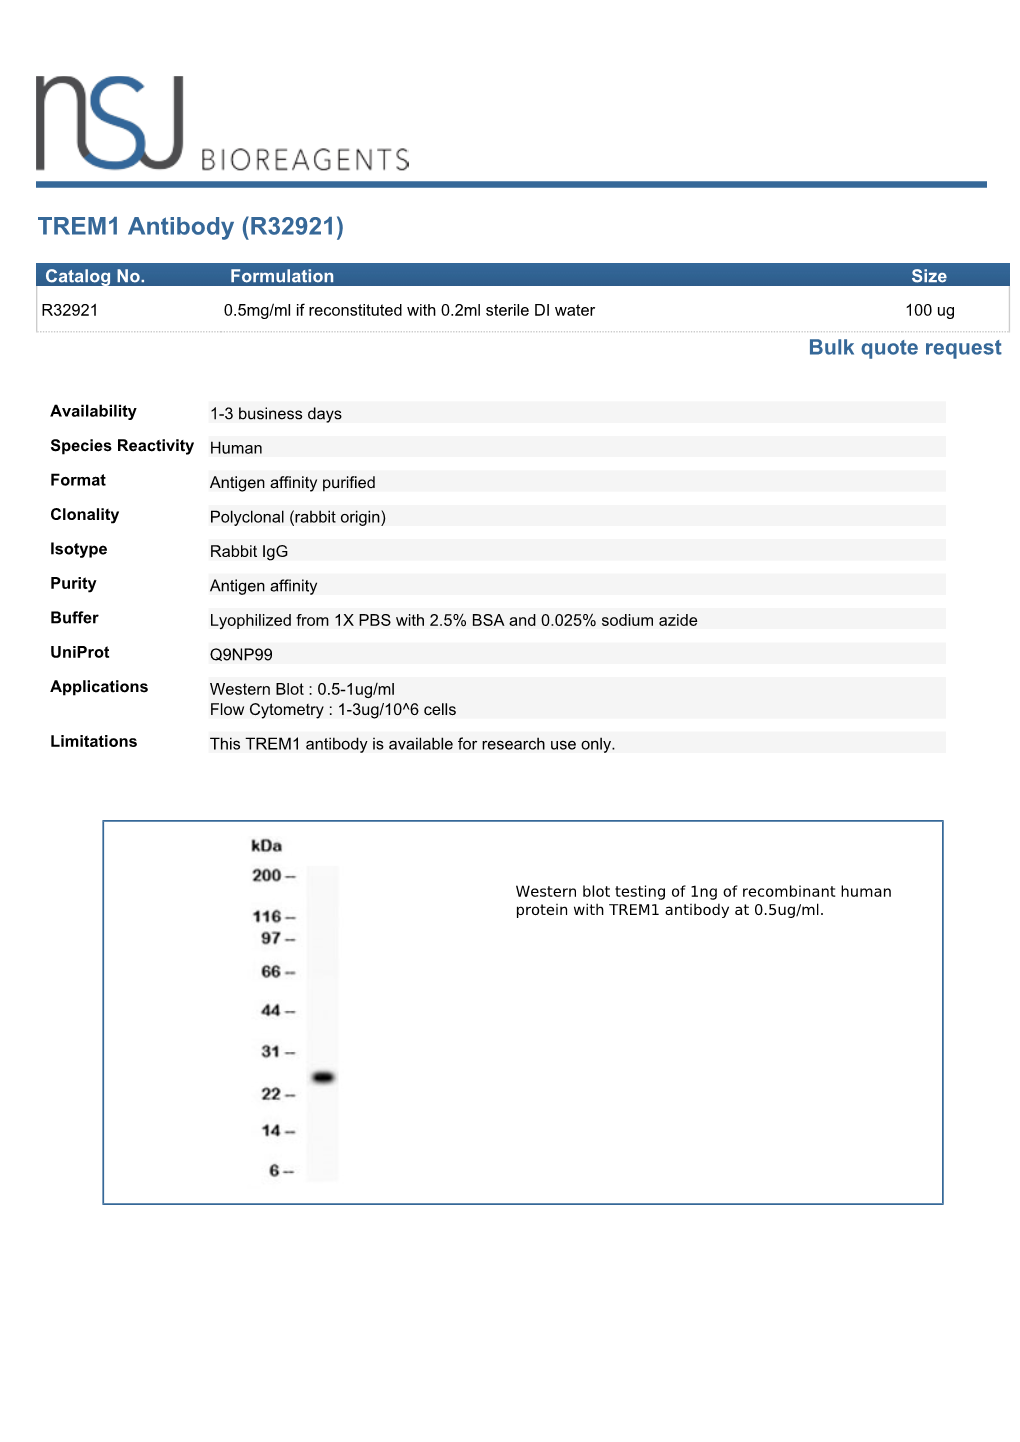 TREM1 Antibody (R32921)